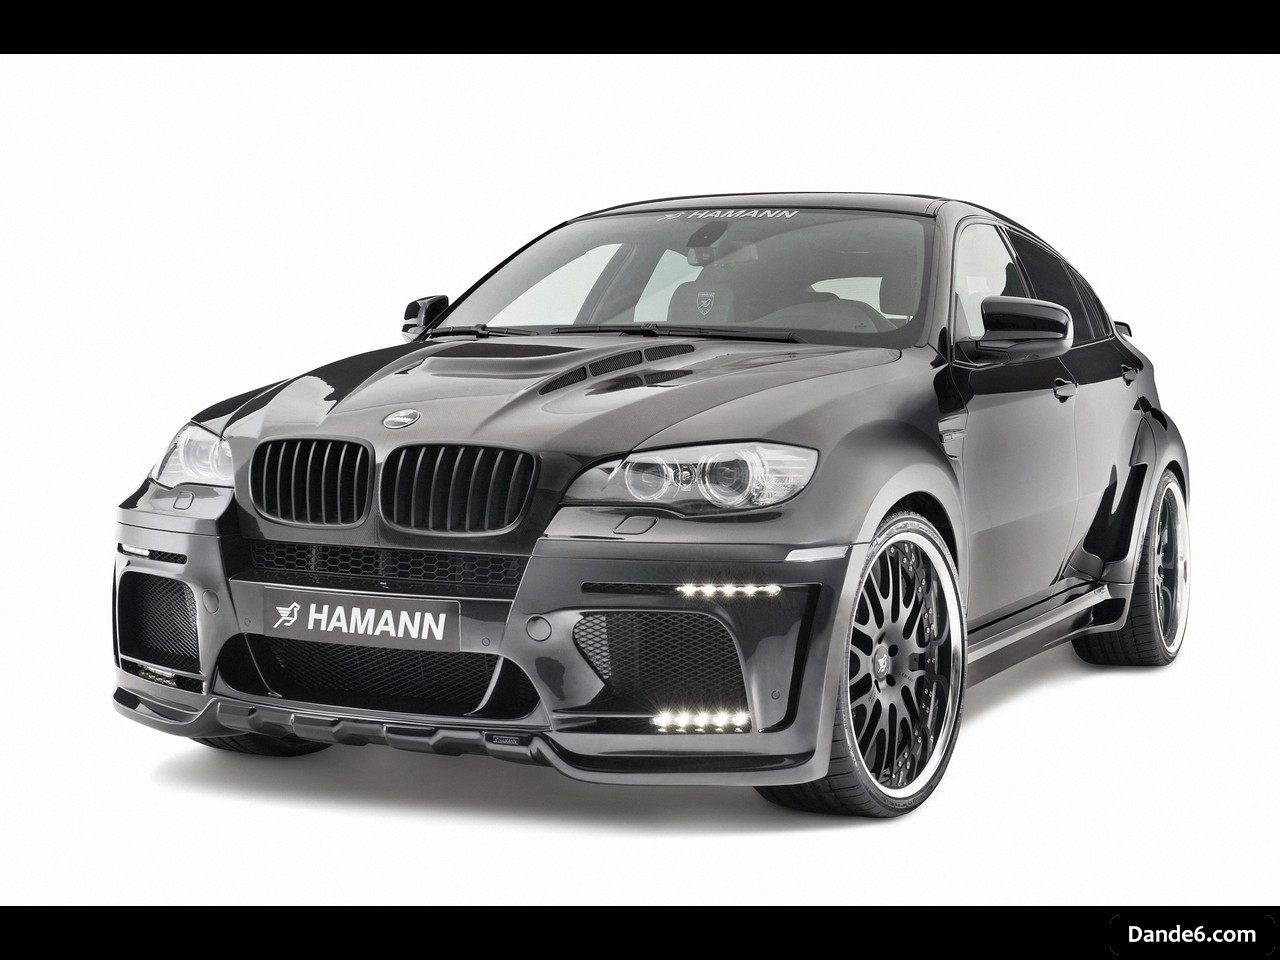 2010 HAMANN Tycoon Evo M based on BMW X6 M